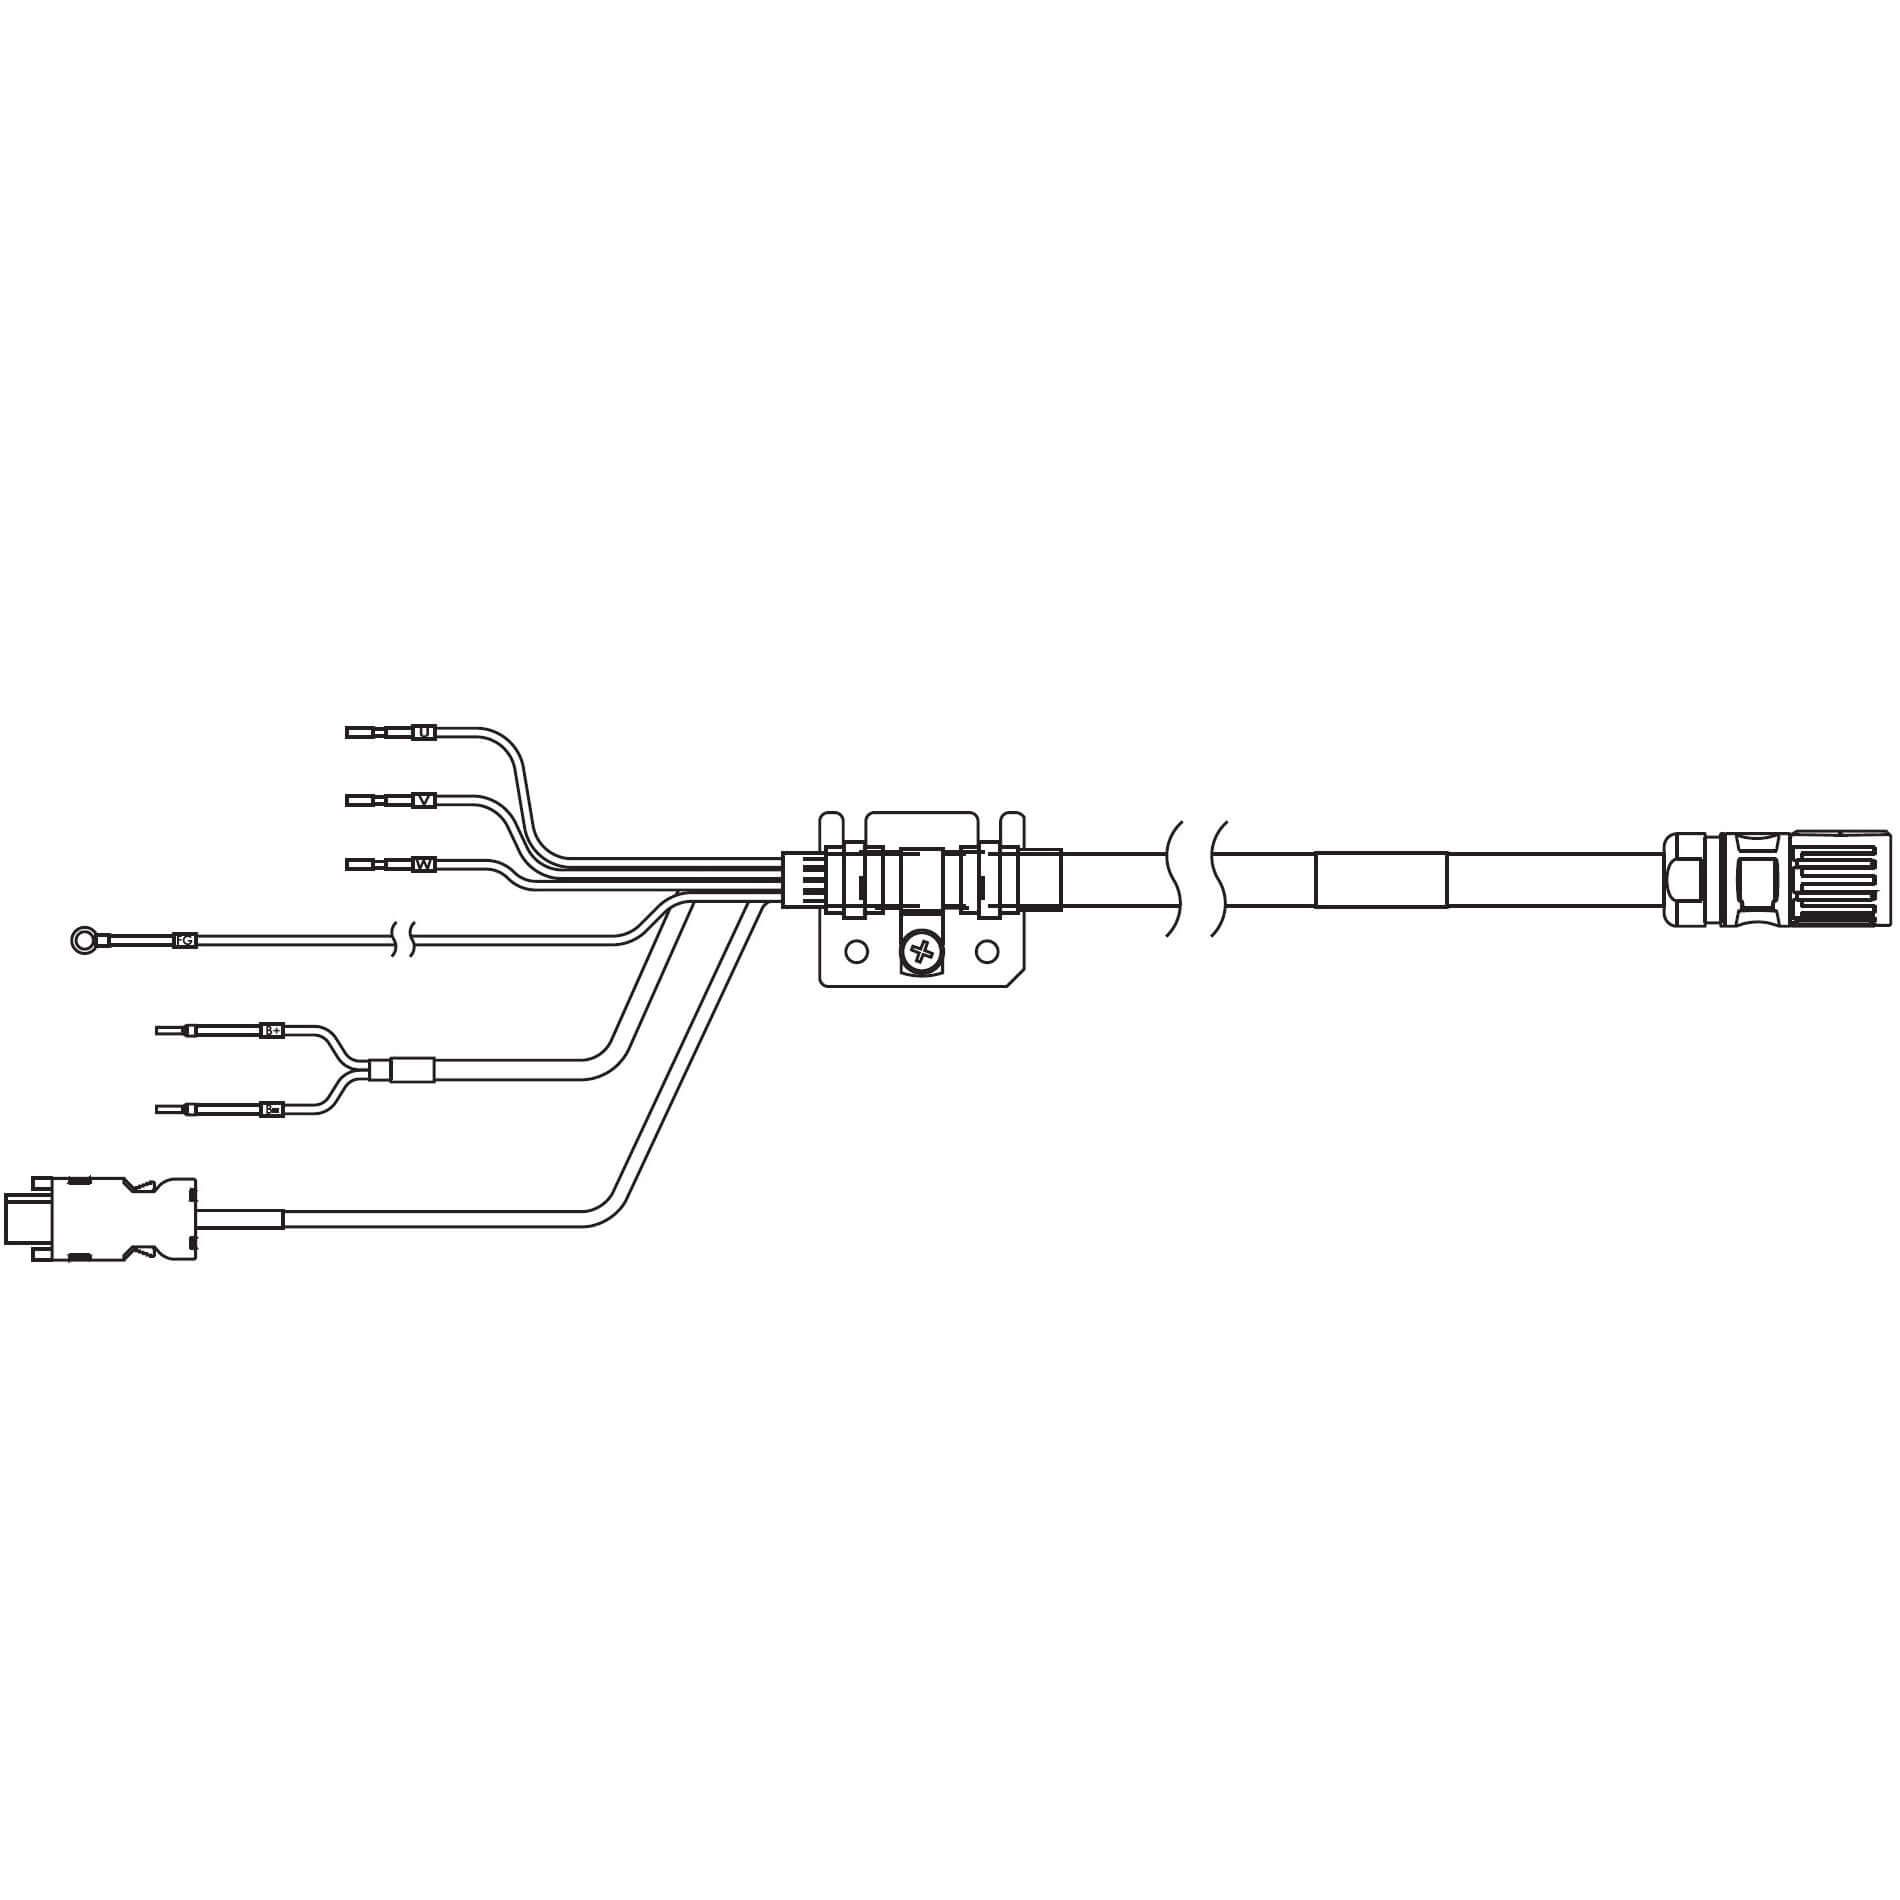 1S-Servomotor mit Safe Motion, Integrierte Kabel R88A-CX1C015BF